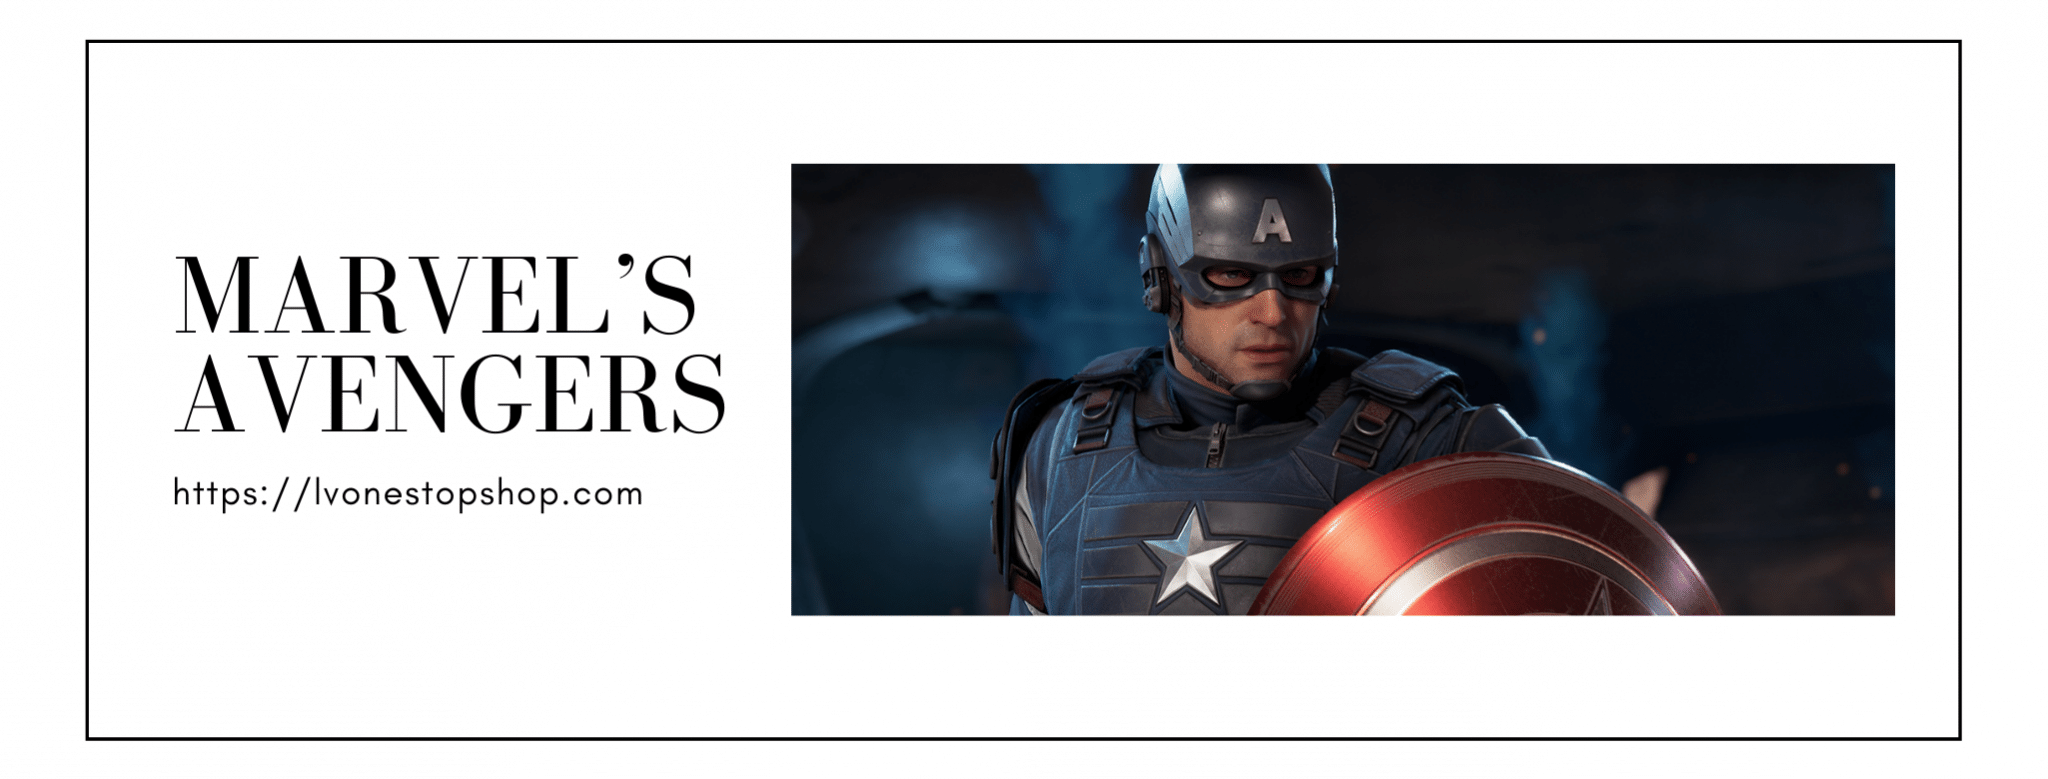 Marvel’s Avengers review